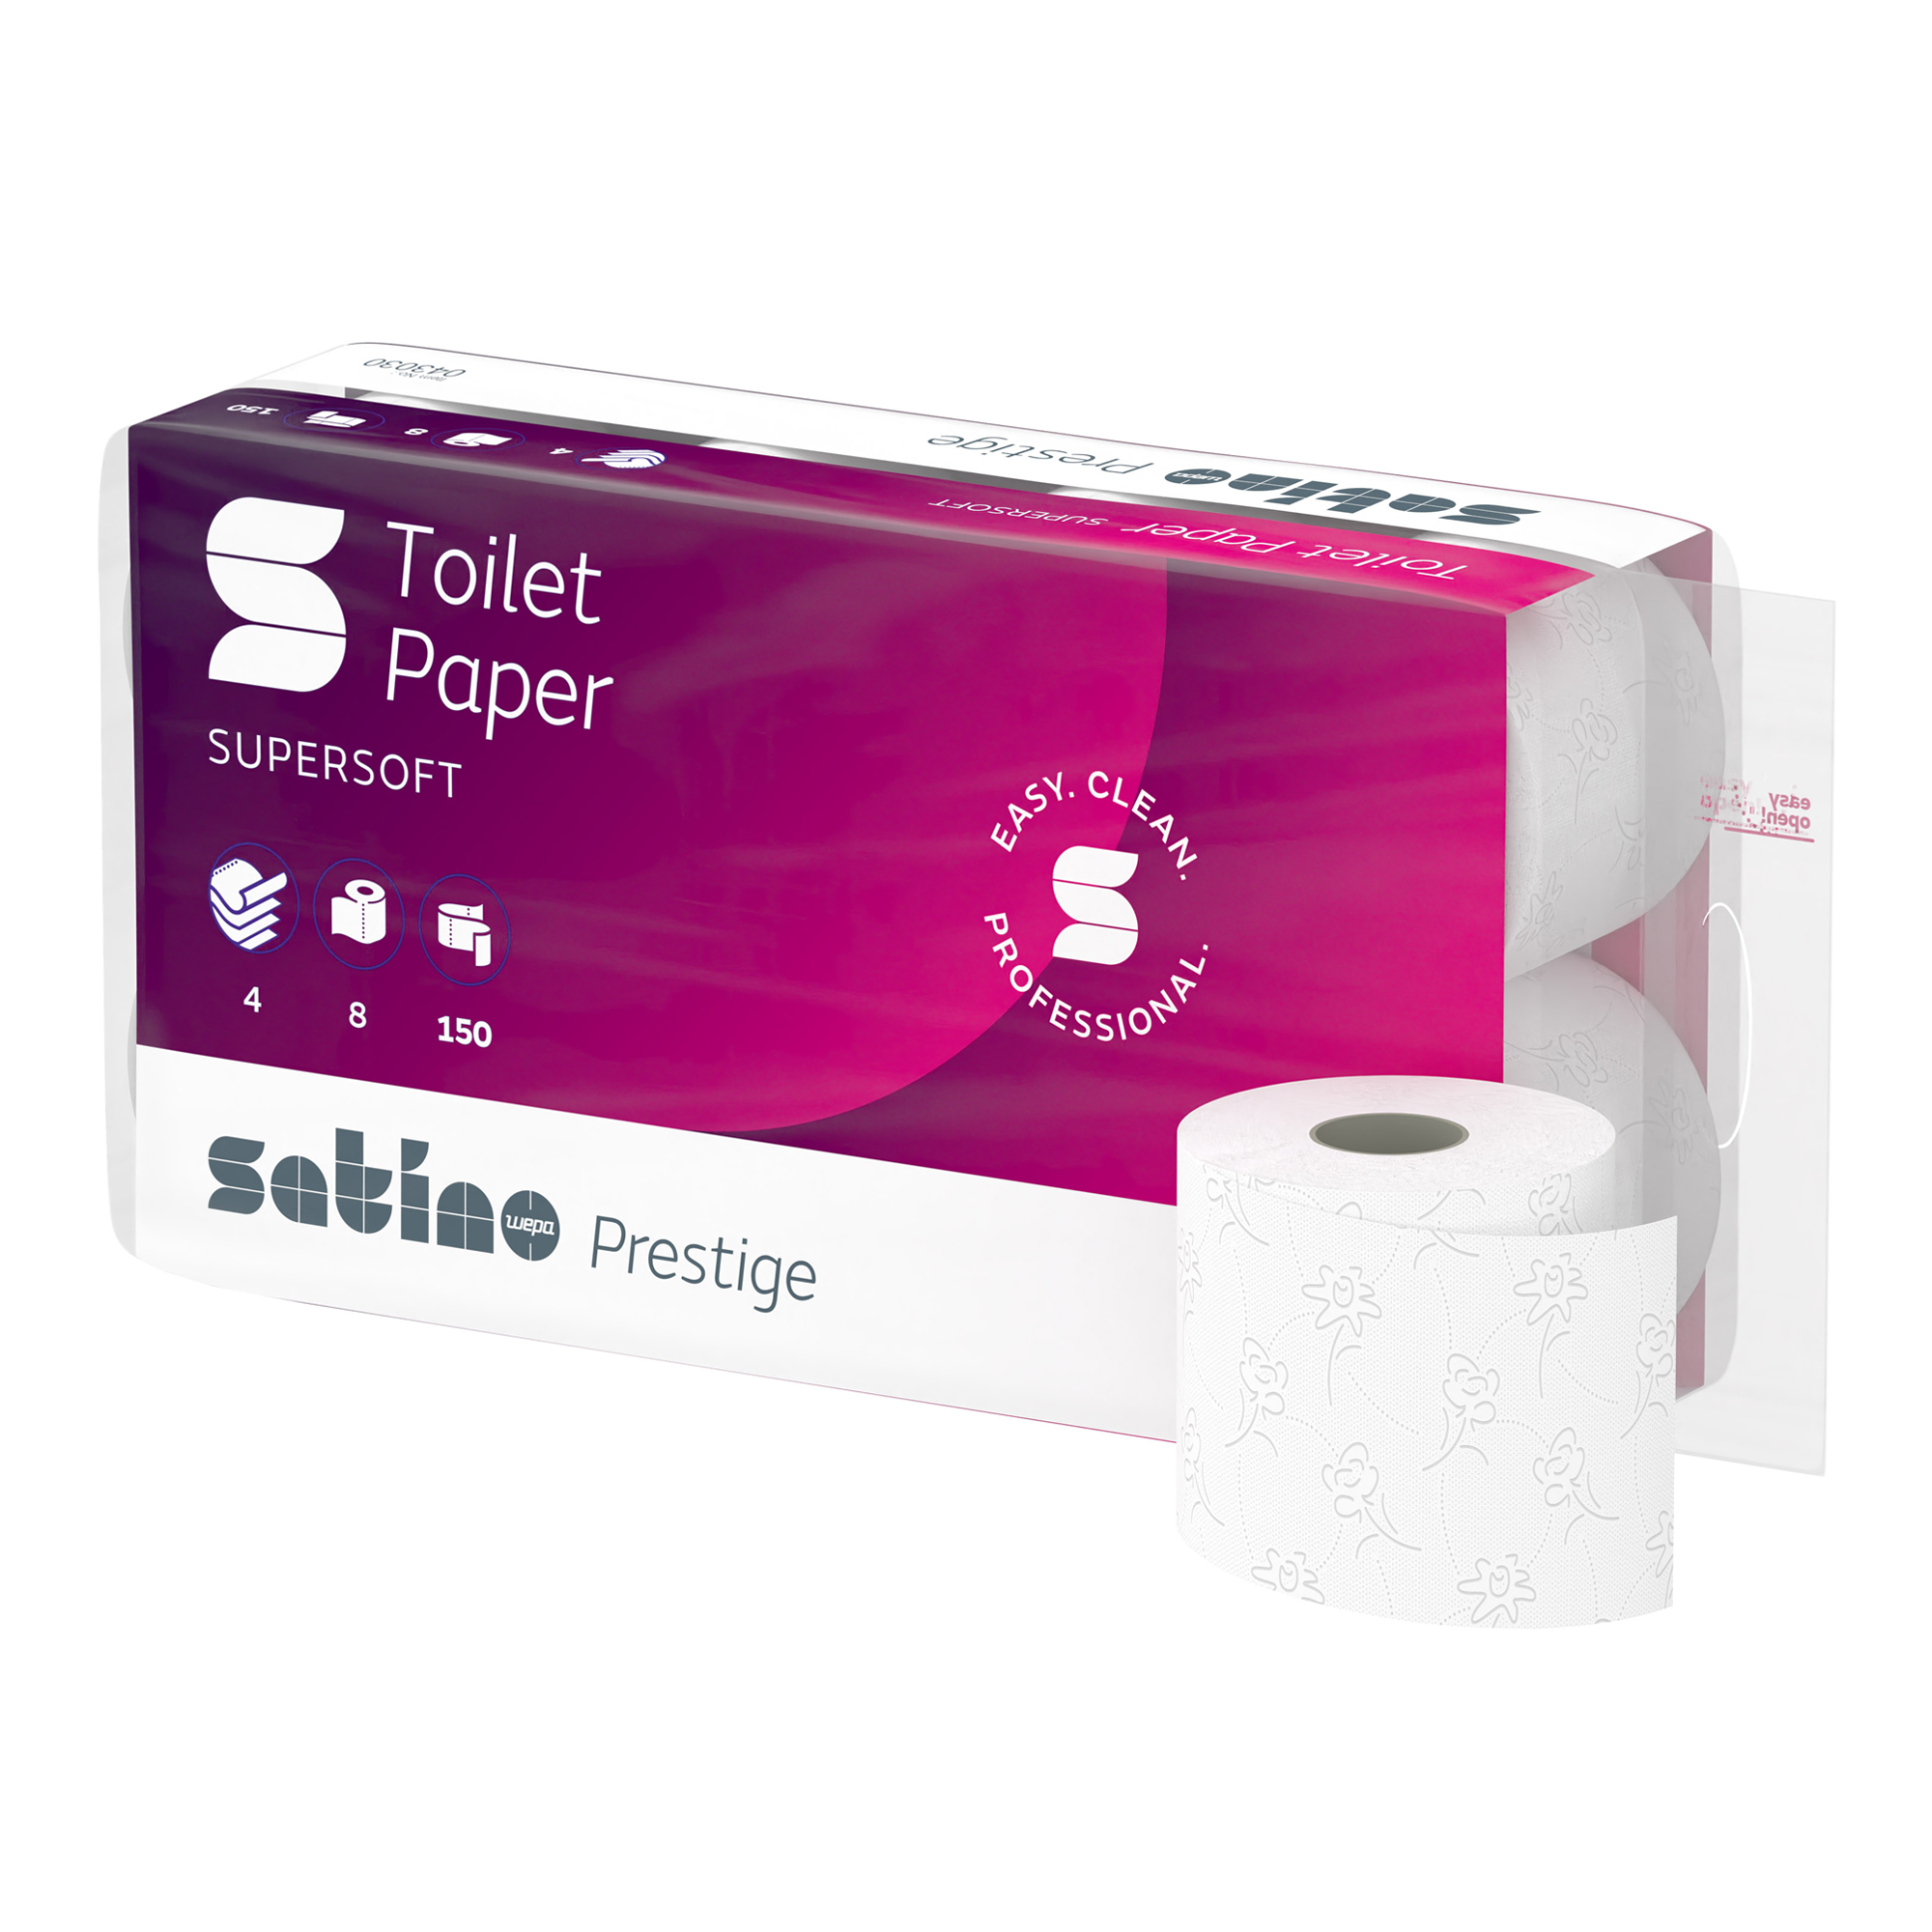 Satino by Wepa prestige Toilettenpapier Zellstoff, 4-lagig, 150 Blatt 72 Rollen 043030_1